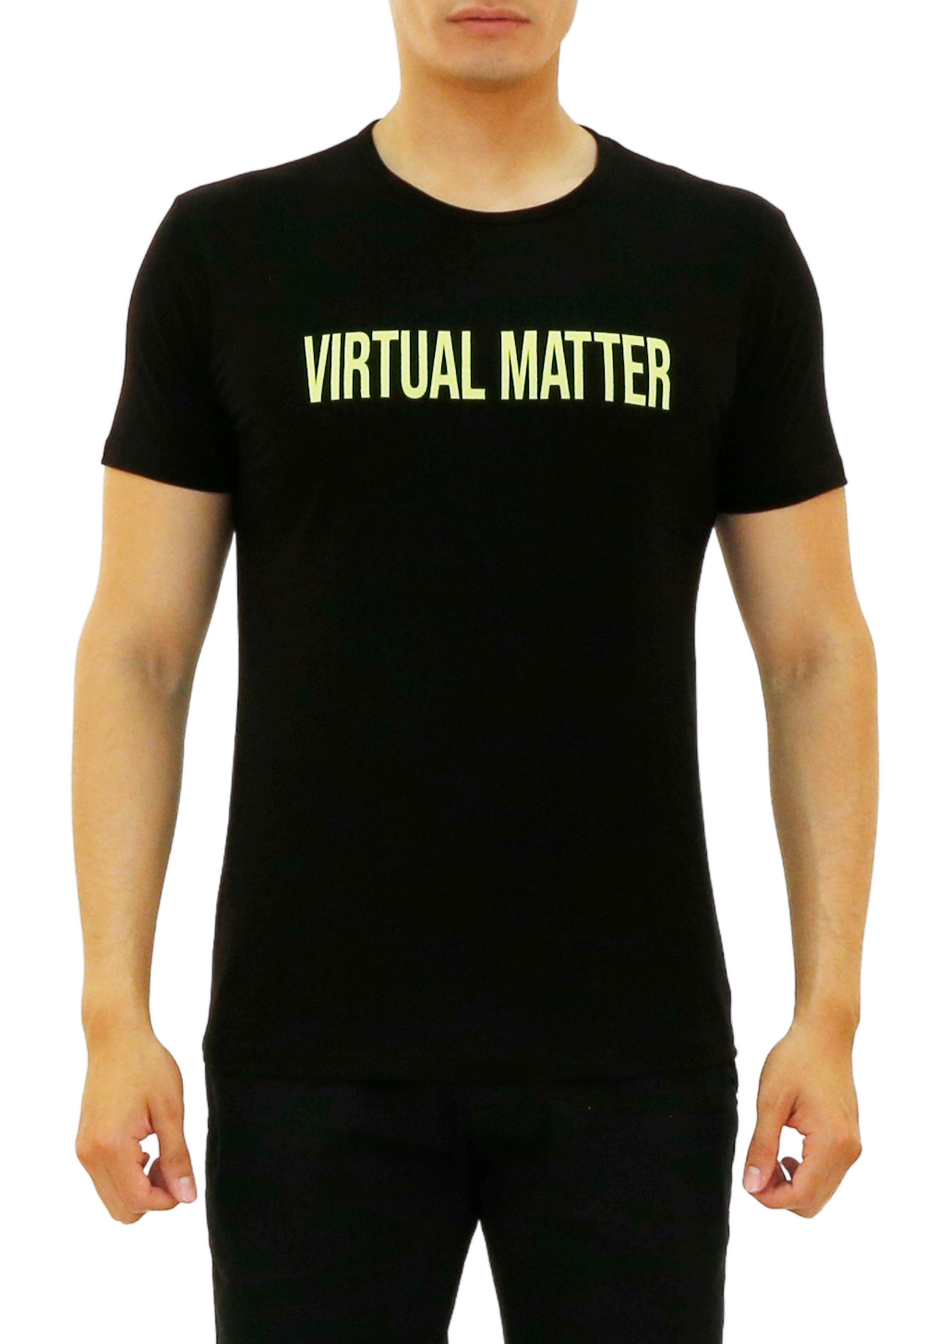 Virtual Matter Graphic Tee Black